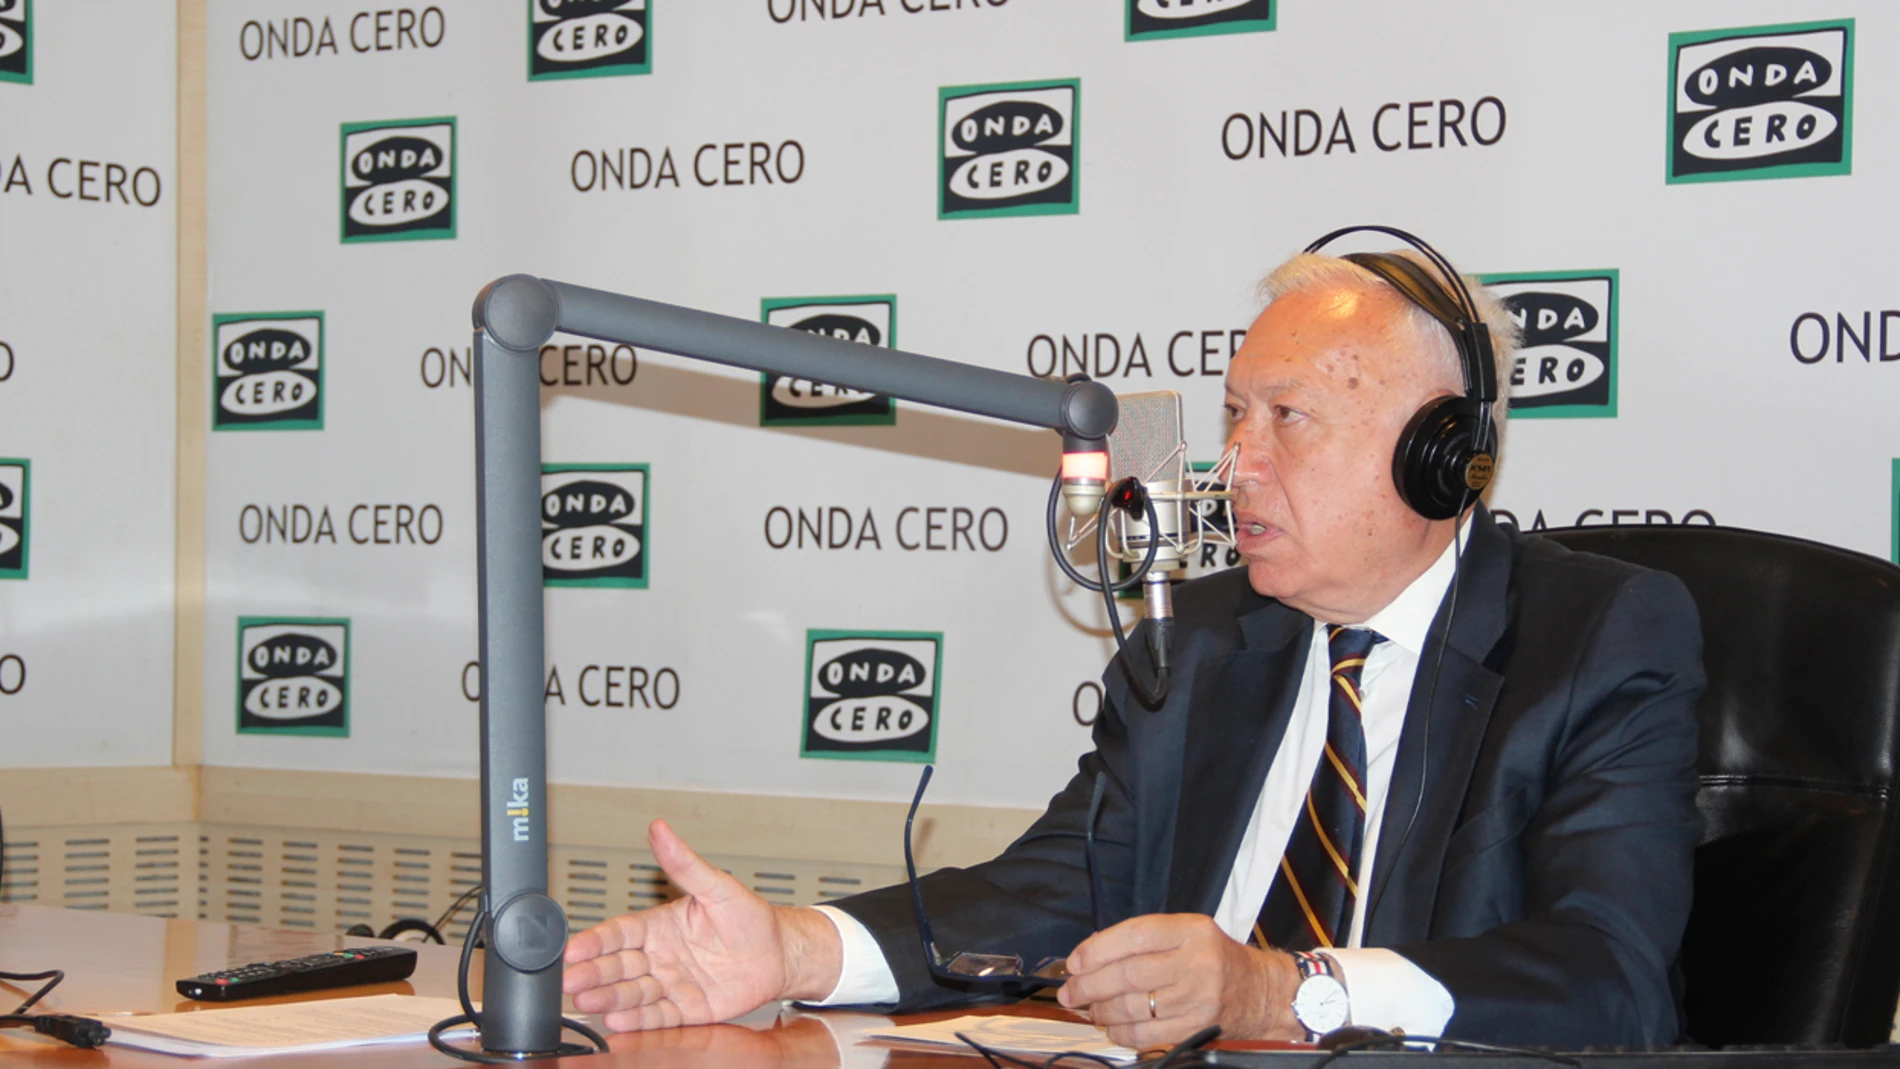  José Manuel García-Margallo en Onda Cero